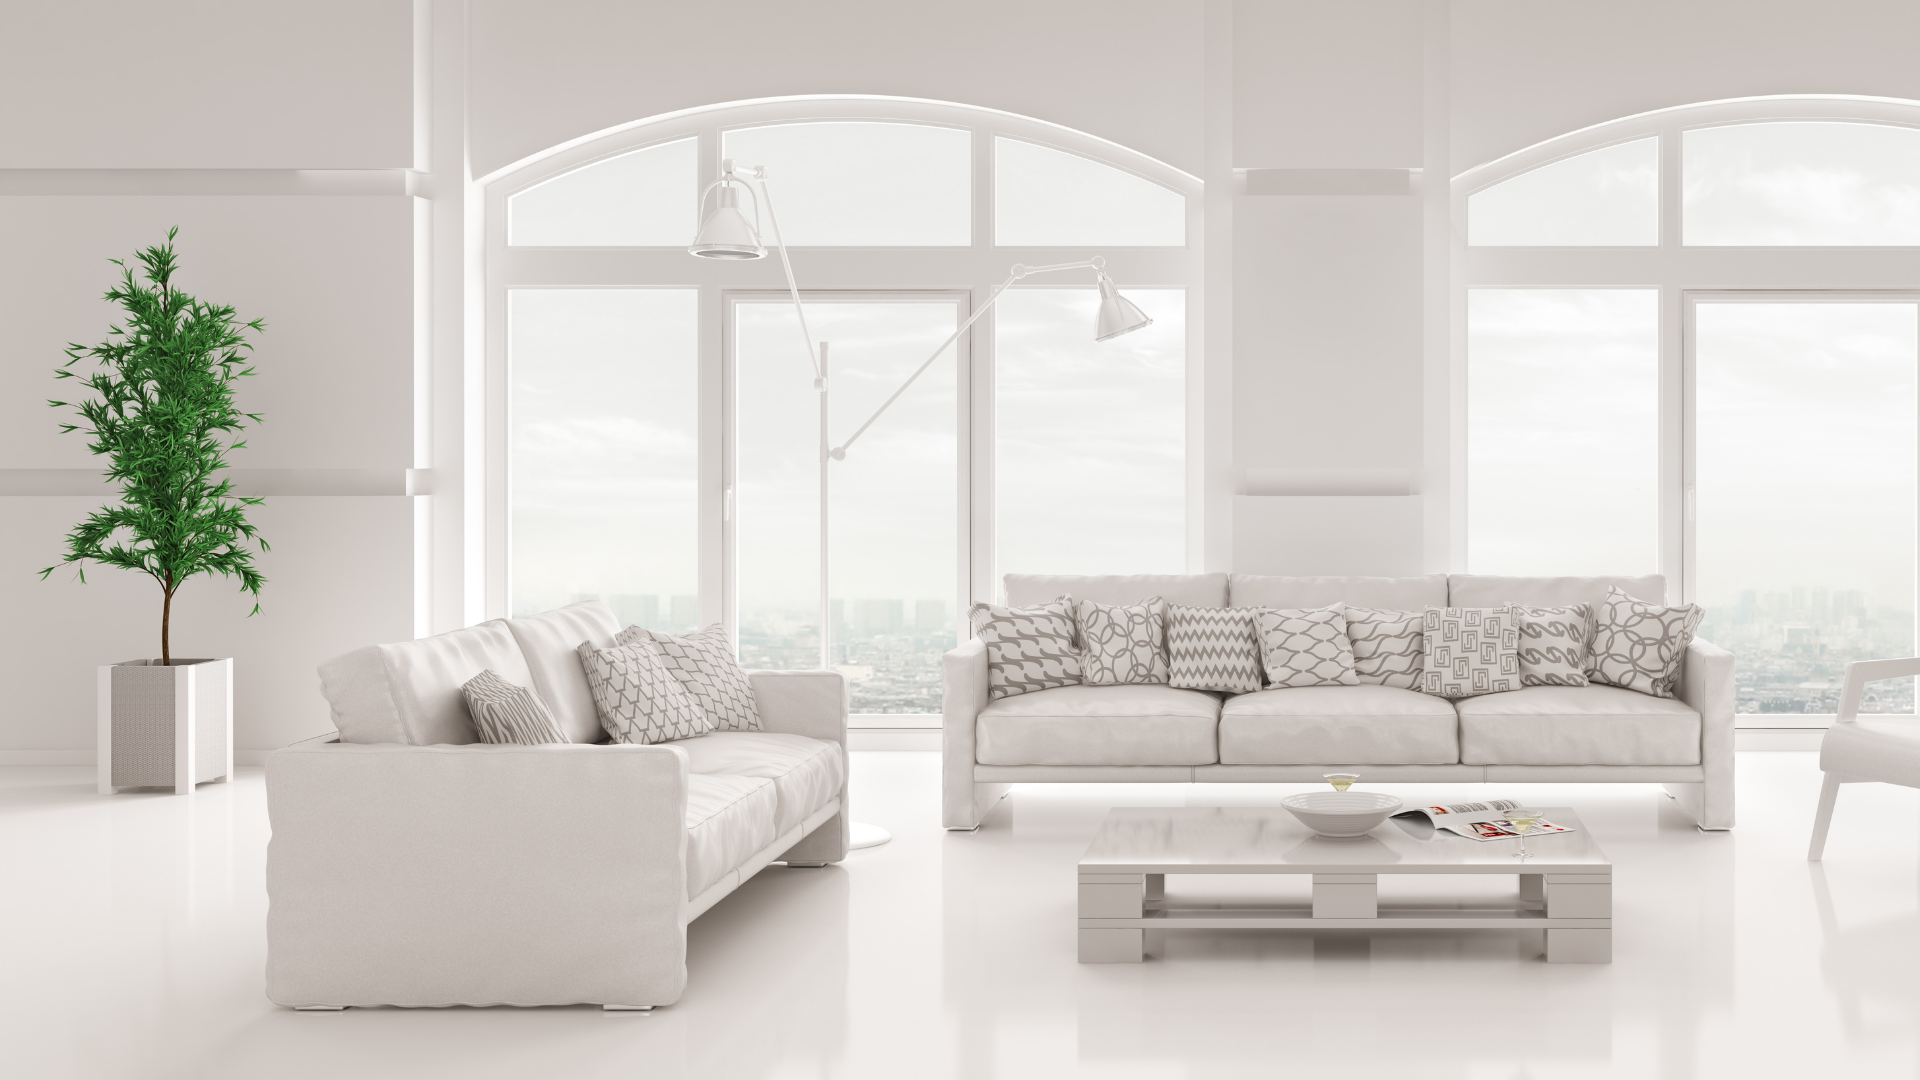 Nền nhà màu trắng là một xu hướng mới trong thiết kế nội thất. Với sự sáng tạo và tinh tế, nền nhà màu trắng sẽ mang đến cho bạn một không gian sống mới lạ và độc đáo. Hãy cùng khám phá những hình ảnh về sơn tường cho nền nhà màu trắng và cảm nhận sự thăng hoa của vẻ đẹp trang nhã và tinh tế này.